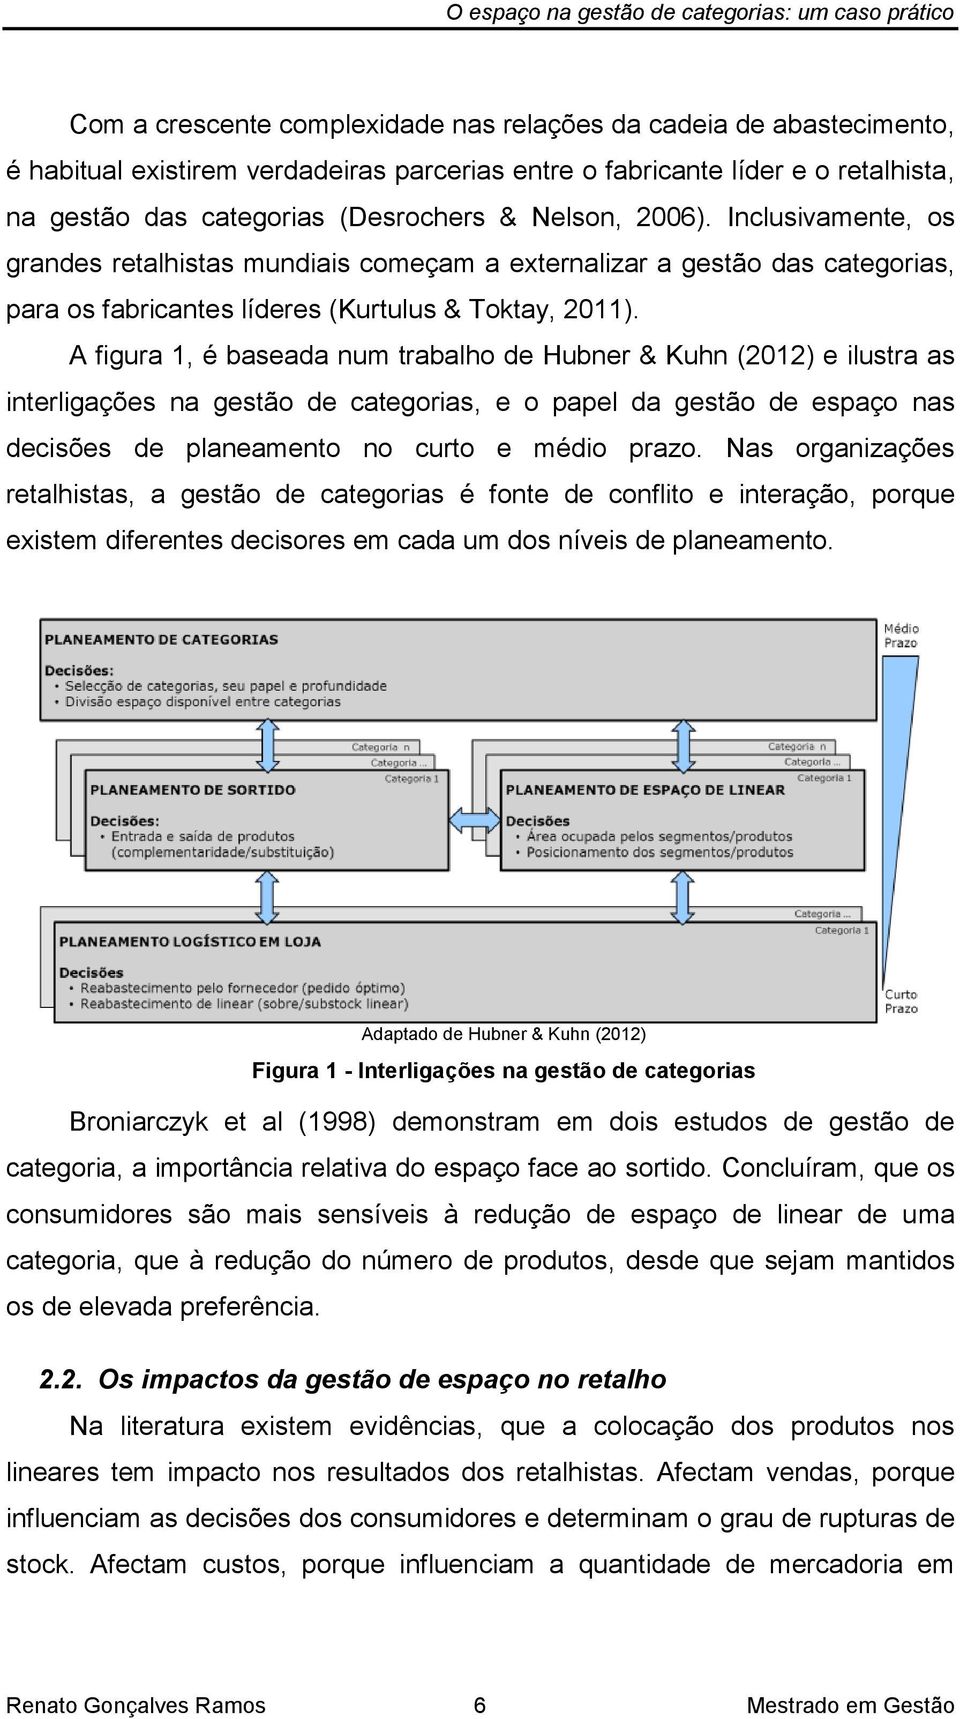 A figura 1, é baseada num trabalho de Hubner & Kuhn (2012) e ilustra as interligações na gestão de categorias, e o papel da gestão de espaço nas decisões de planeamento no curto e médio prazo.